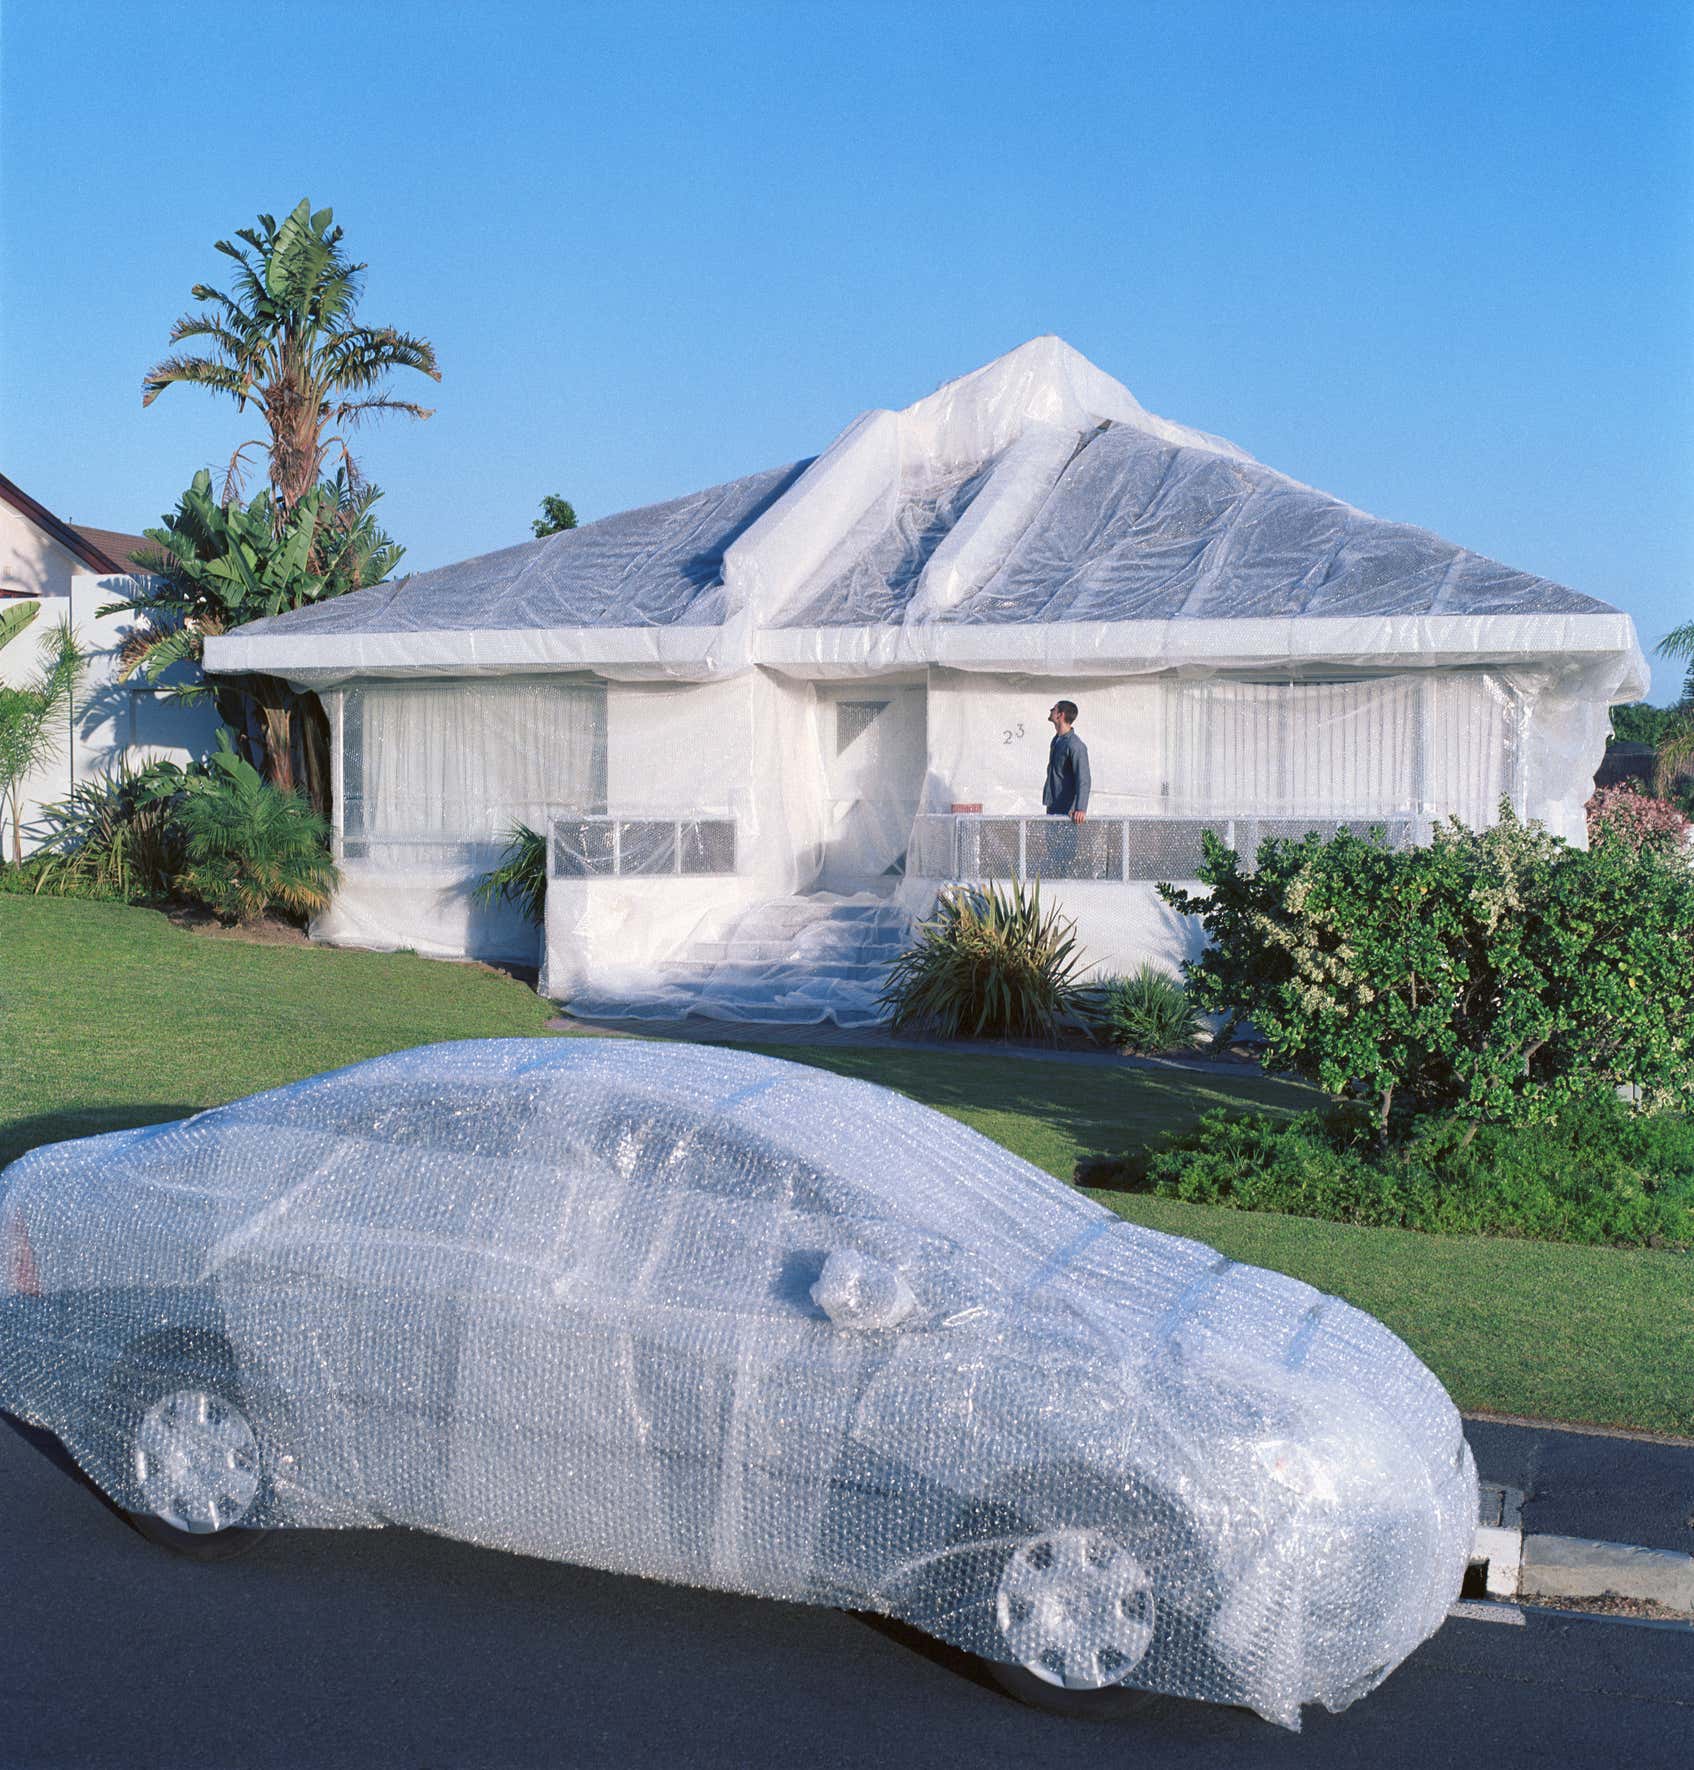 泡沫包裹着汽车和房子。